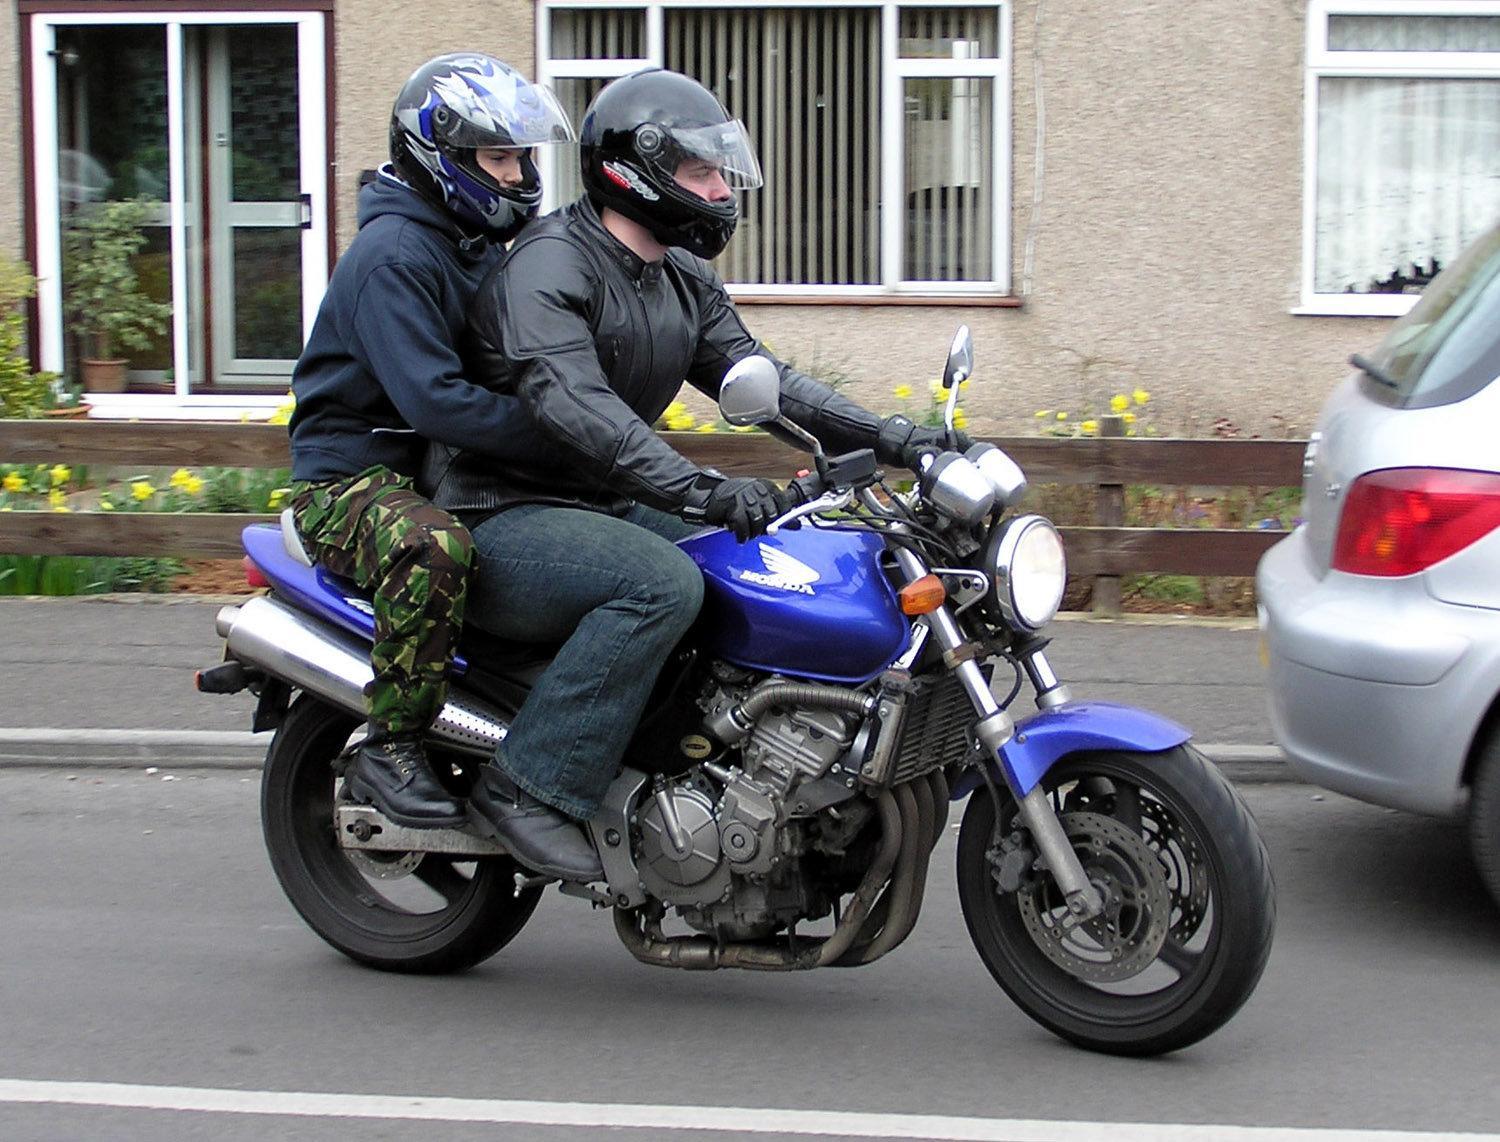 Conseils pour rouler à moto avec un passager - Tutoriels moto - Motards